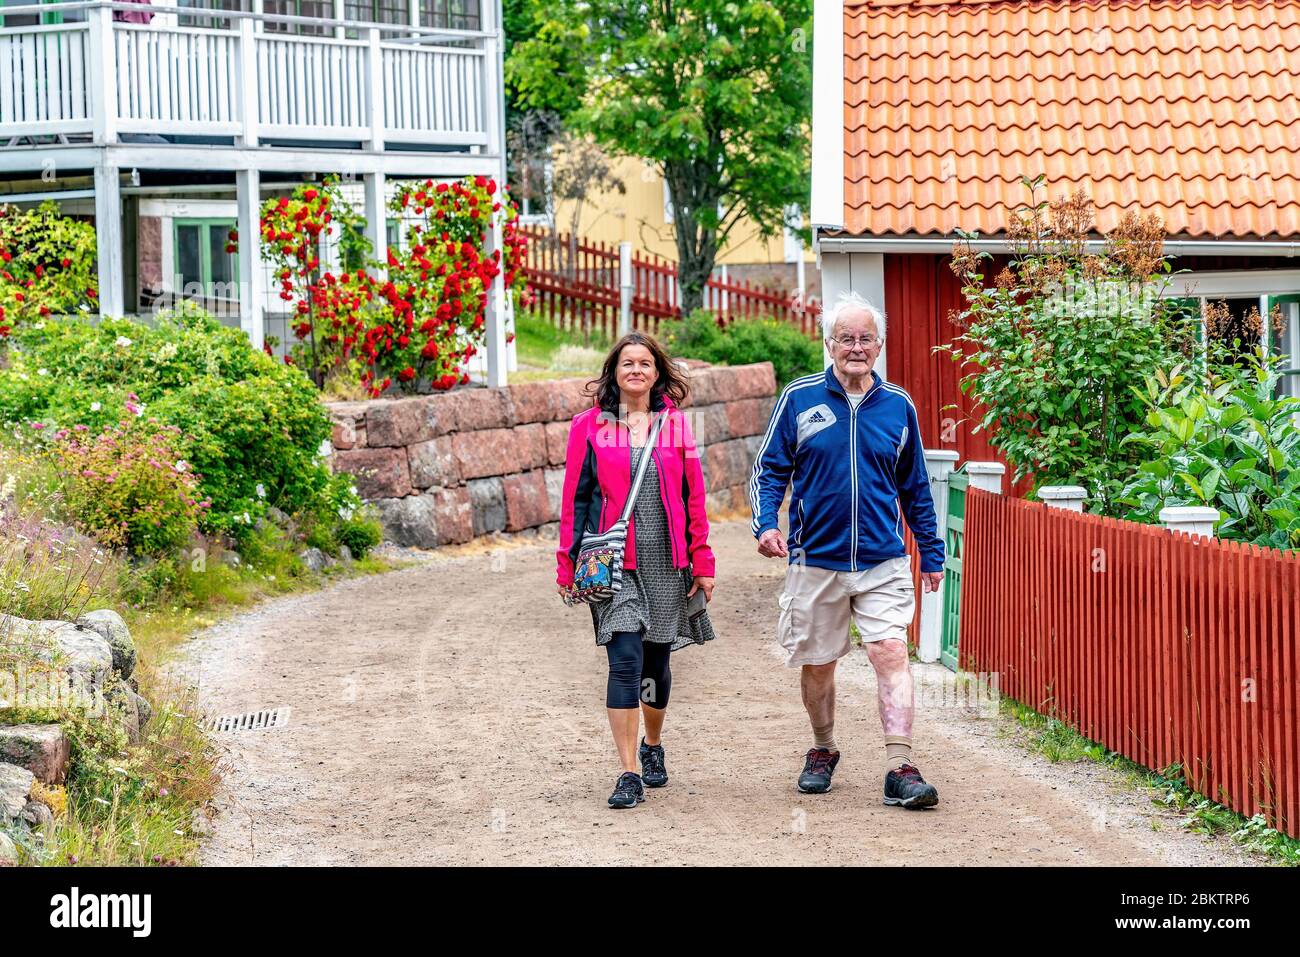 ULVON, SCHWEDEN - 23. JULI 2019: Junge skandinavische Frauen gehen mit altem Mann, Touristen wandern auf der Insel Ulvon, dem historischen Ort des Fischens in der Ostsee Stockfoto